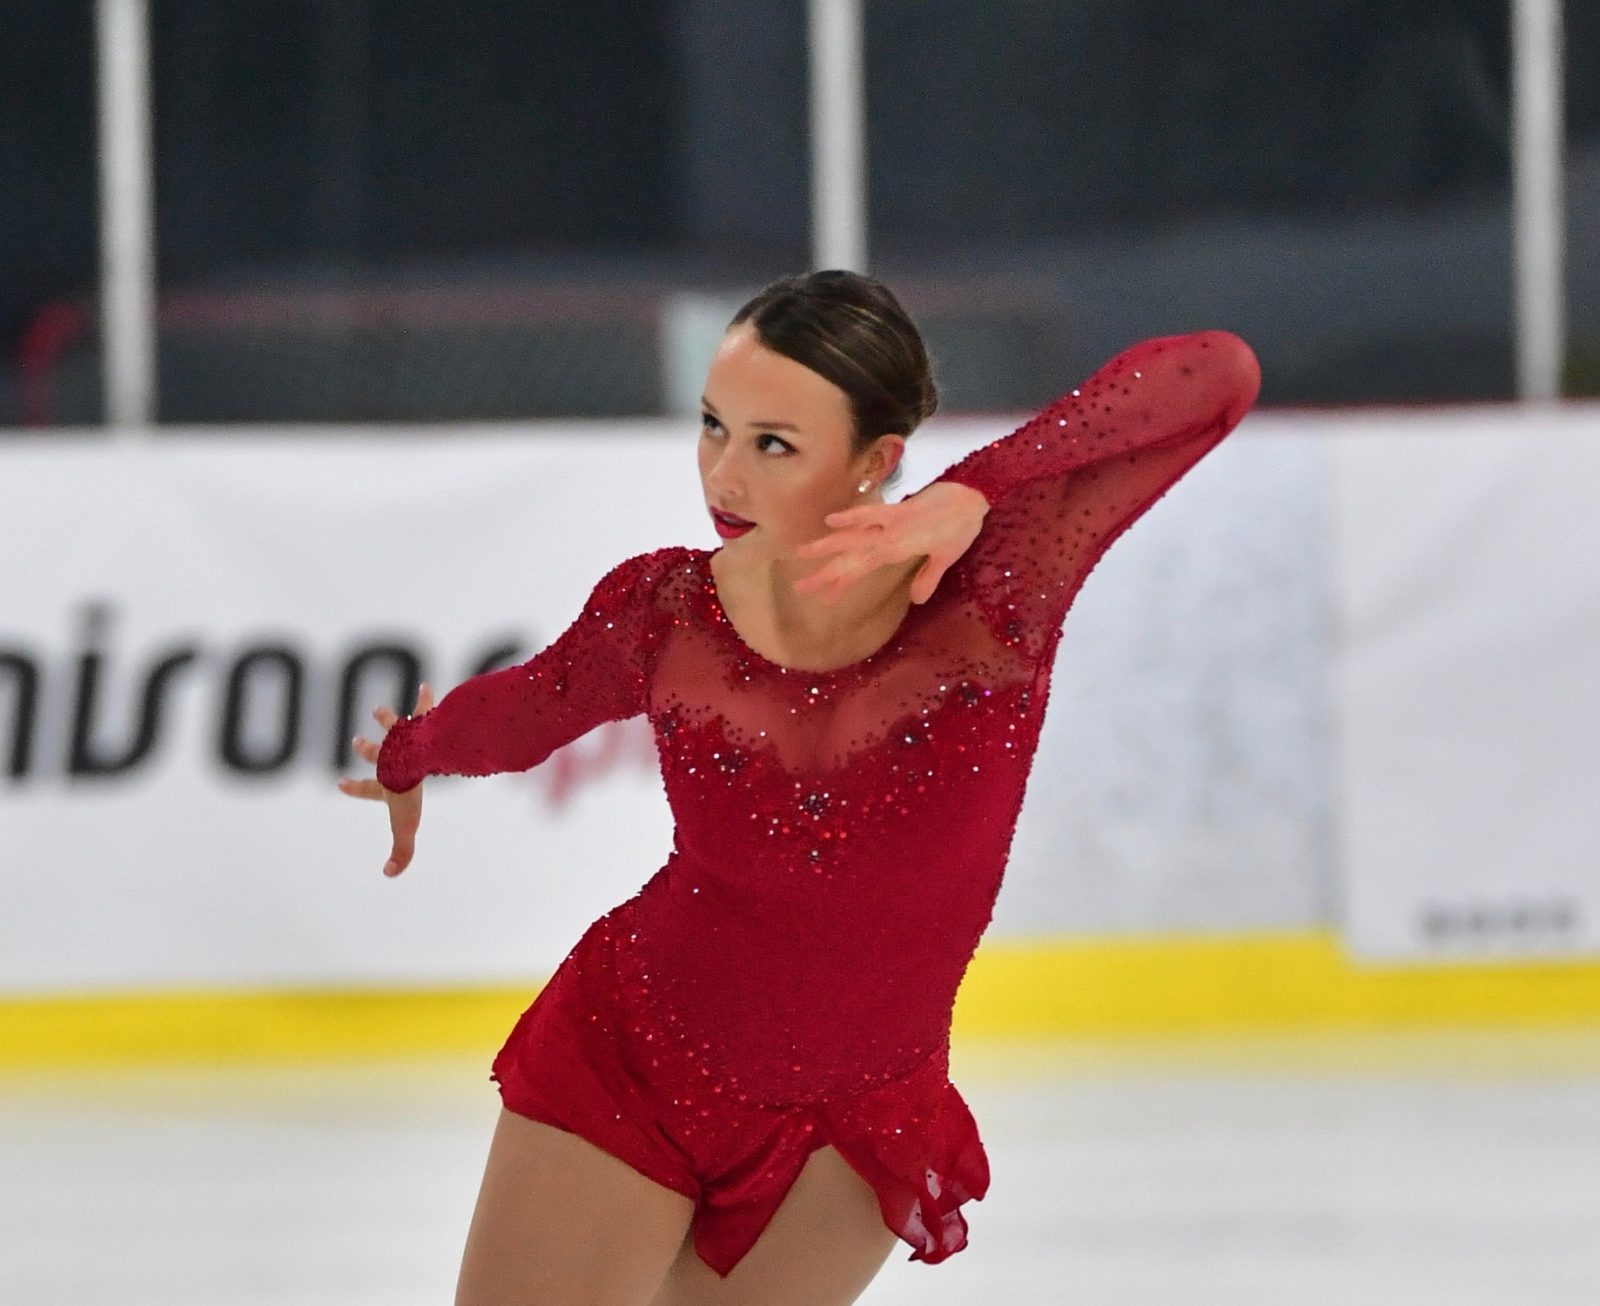 La patineuse Alicia Pineault déterminée à réaliser ses rêves